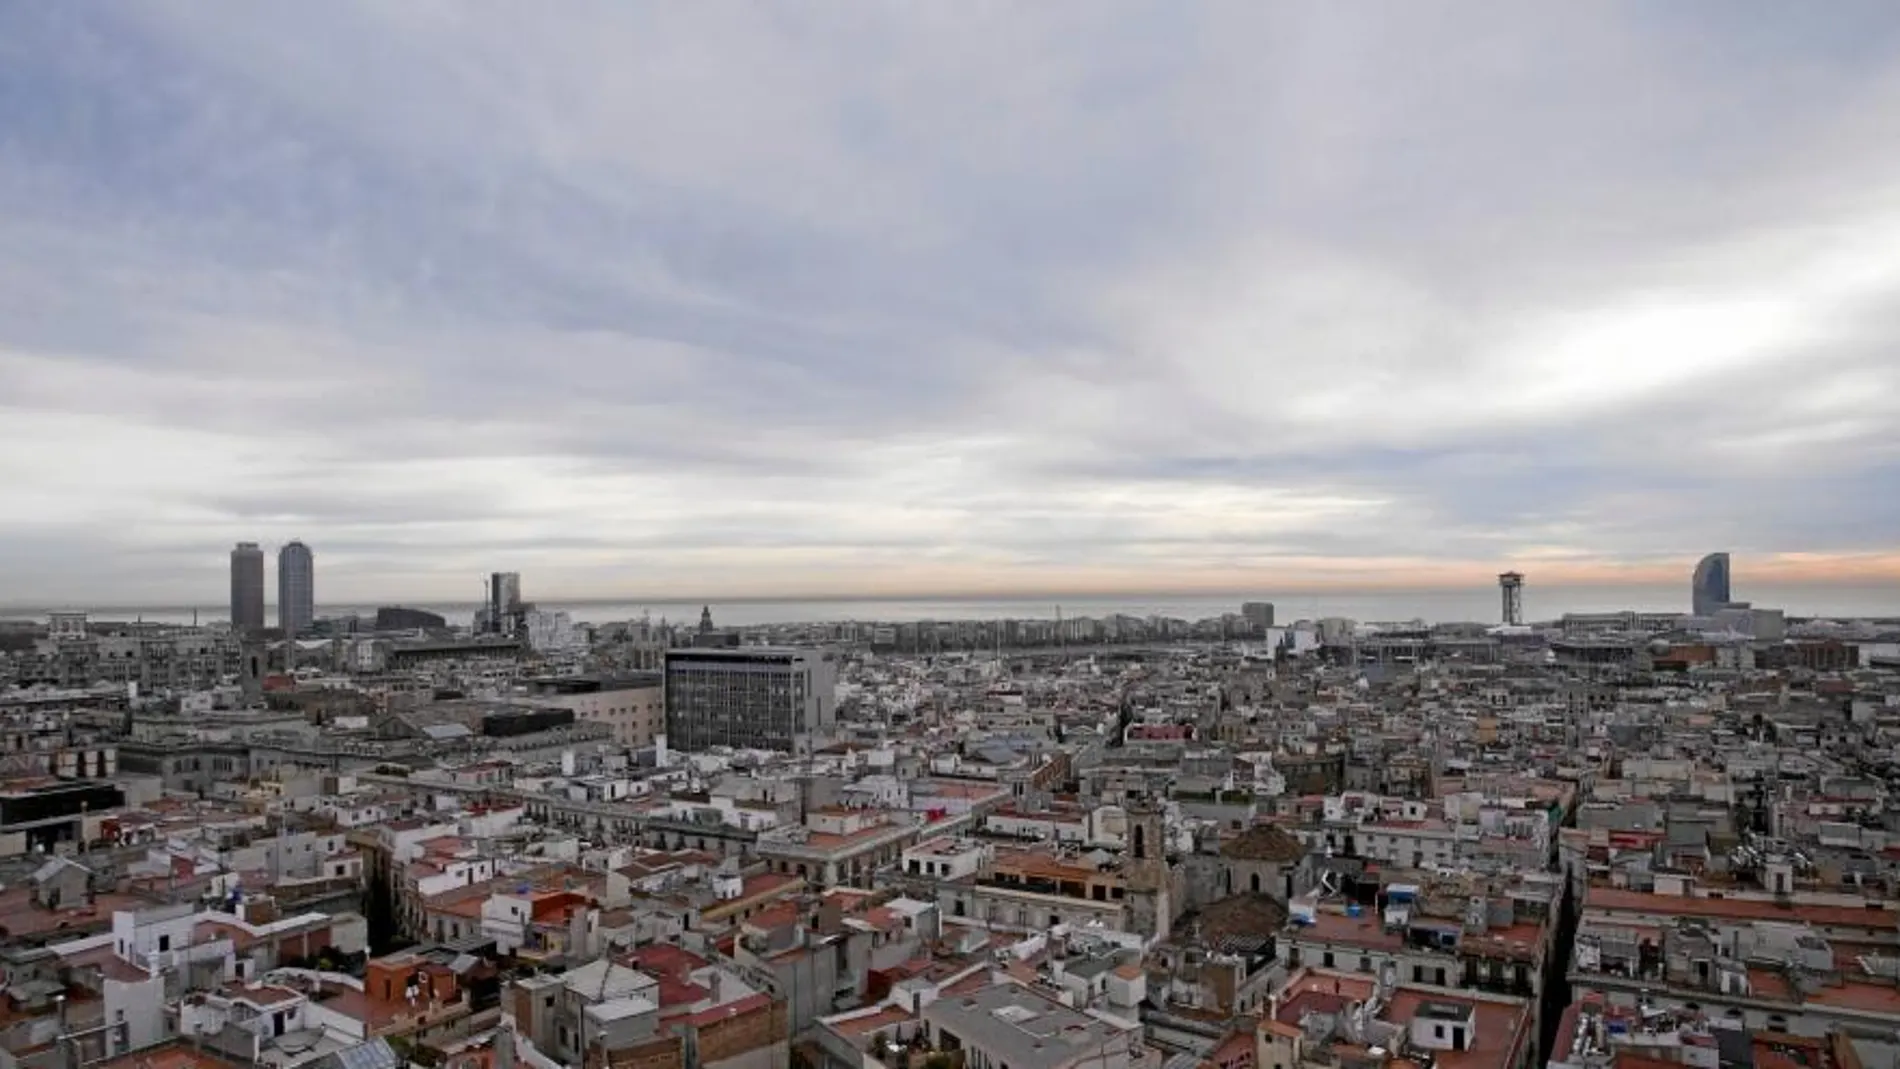 A partir de diciembre, los días de episodio de contaminación se regulará el acceso de vehículos en los 40 municipios del área de Barcelona, el Govern descarta por ahora peajes disuasorios